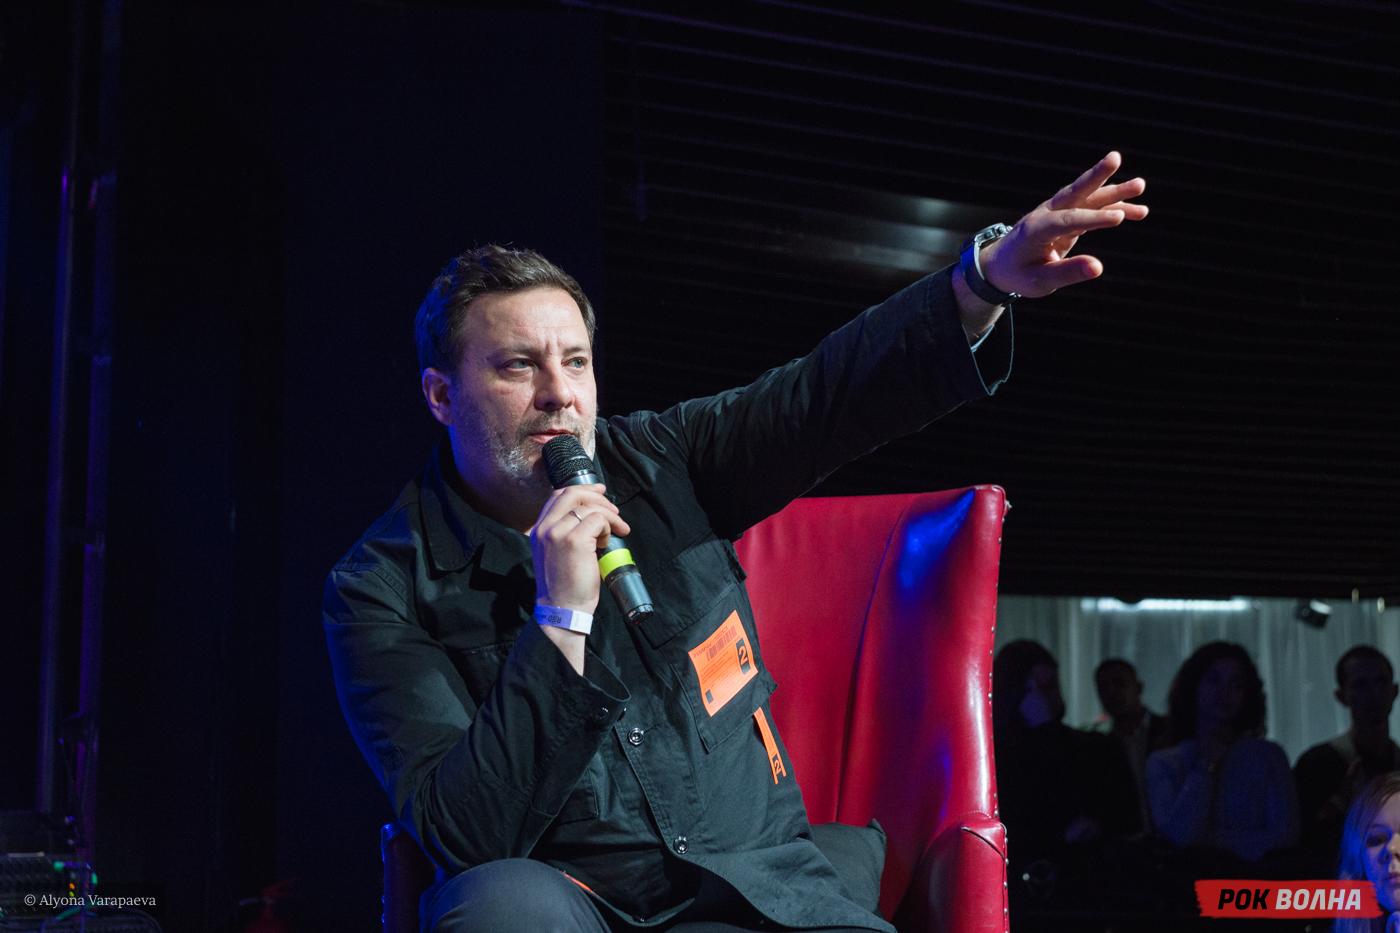 "КРАЙ": Public Talk и DJ Set Дельфина в Москве по случаю выхода нового альбома